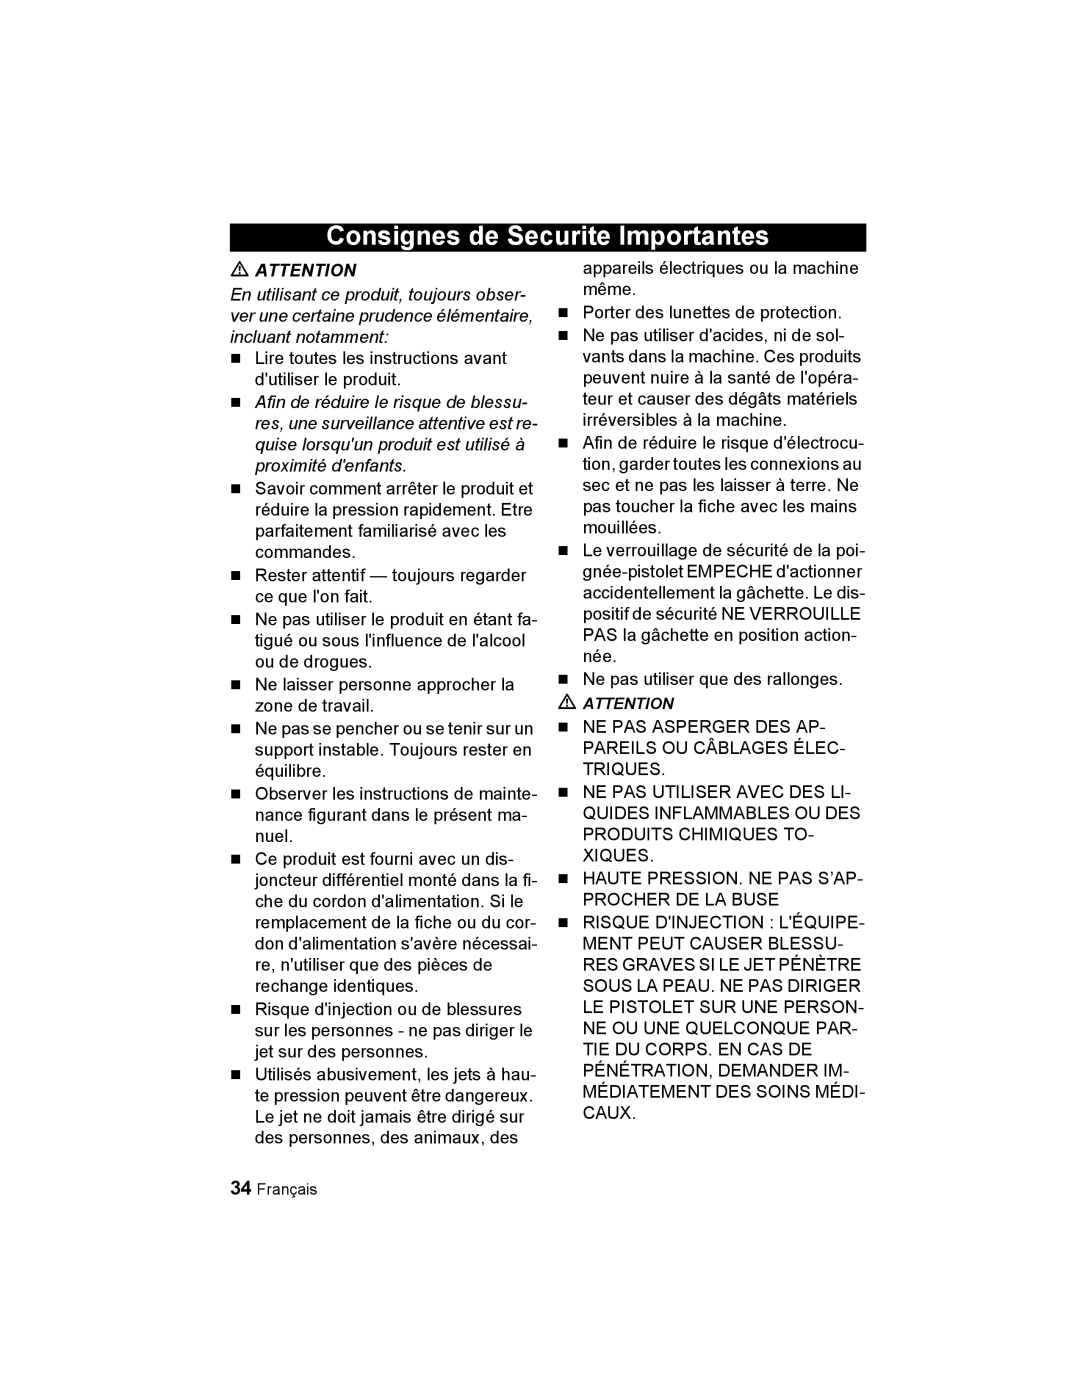 Karcher K 2.56 M manual Consignes de Securite Importantes 